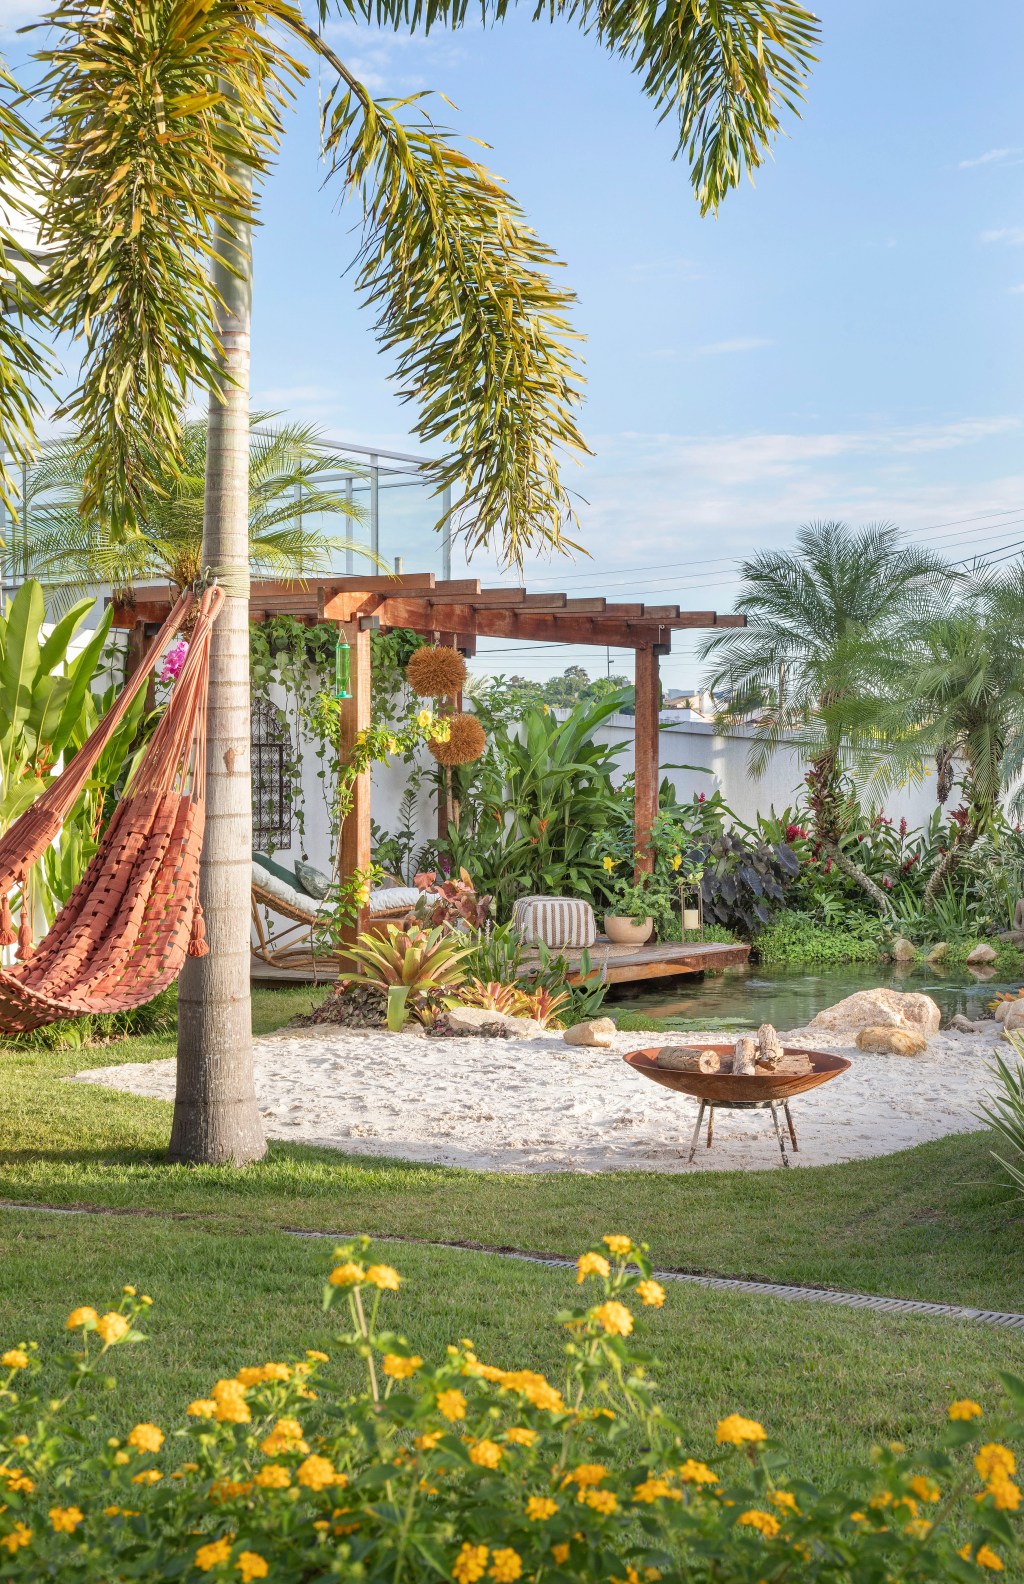 Jardim de 900 m² tem lago com peixes, praia de areia branca e pomar